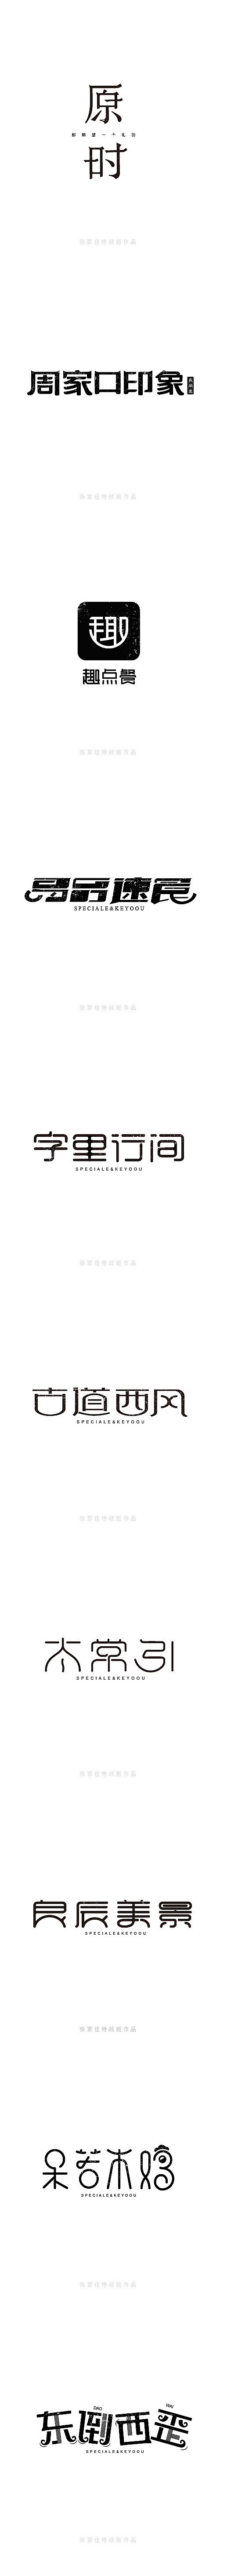 2015年字体设计整理-张家佳特战班 